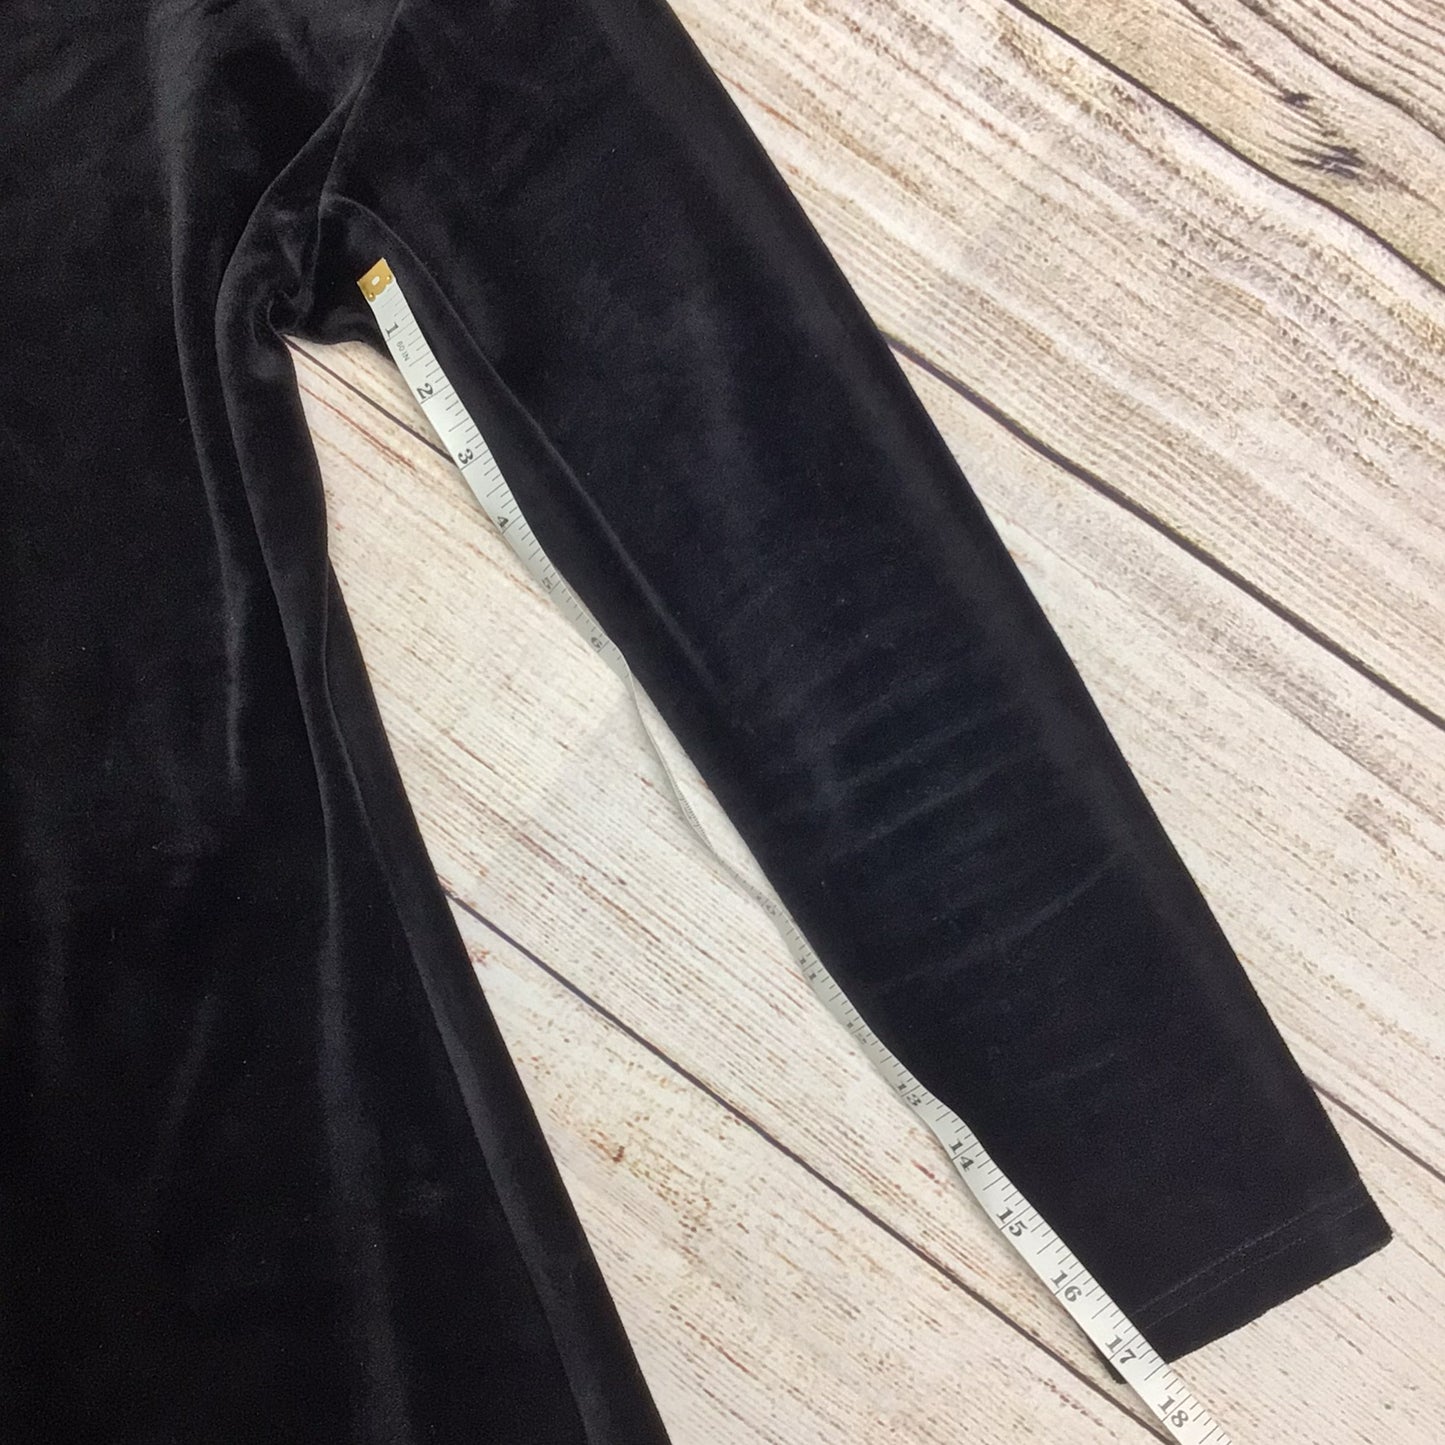 Jigsaw Black Long Velvet Dress Size S (2 on label)